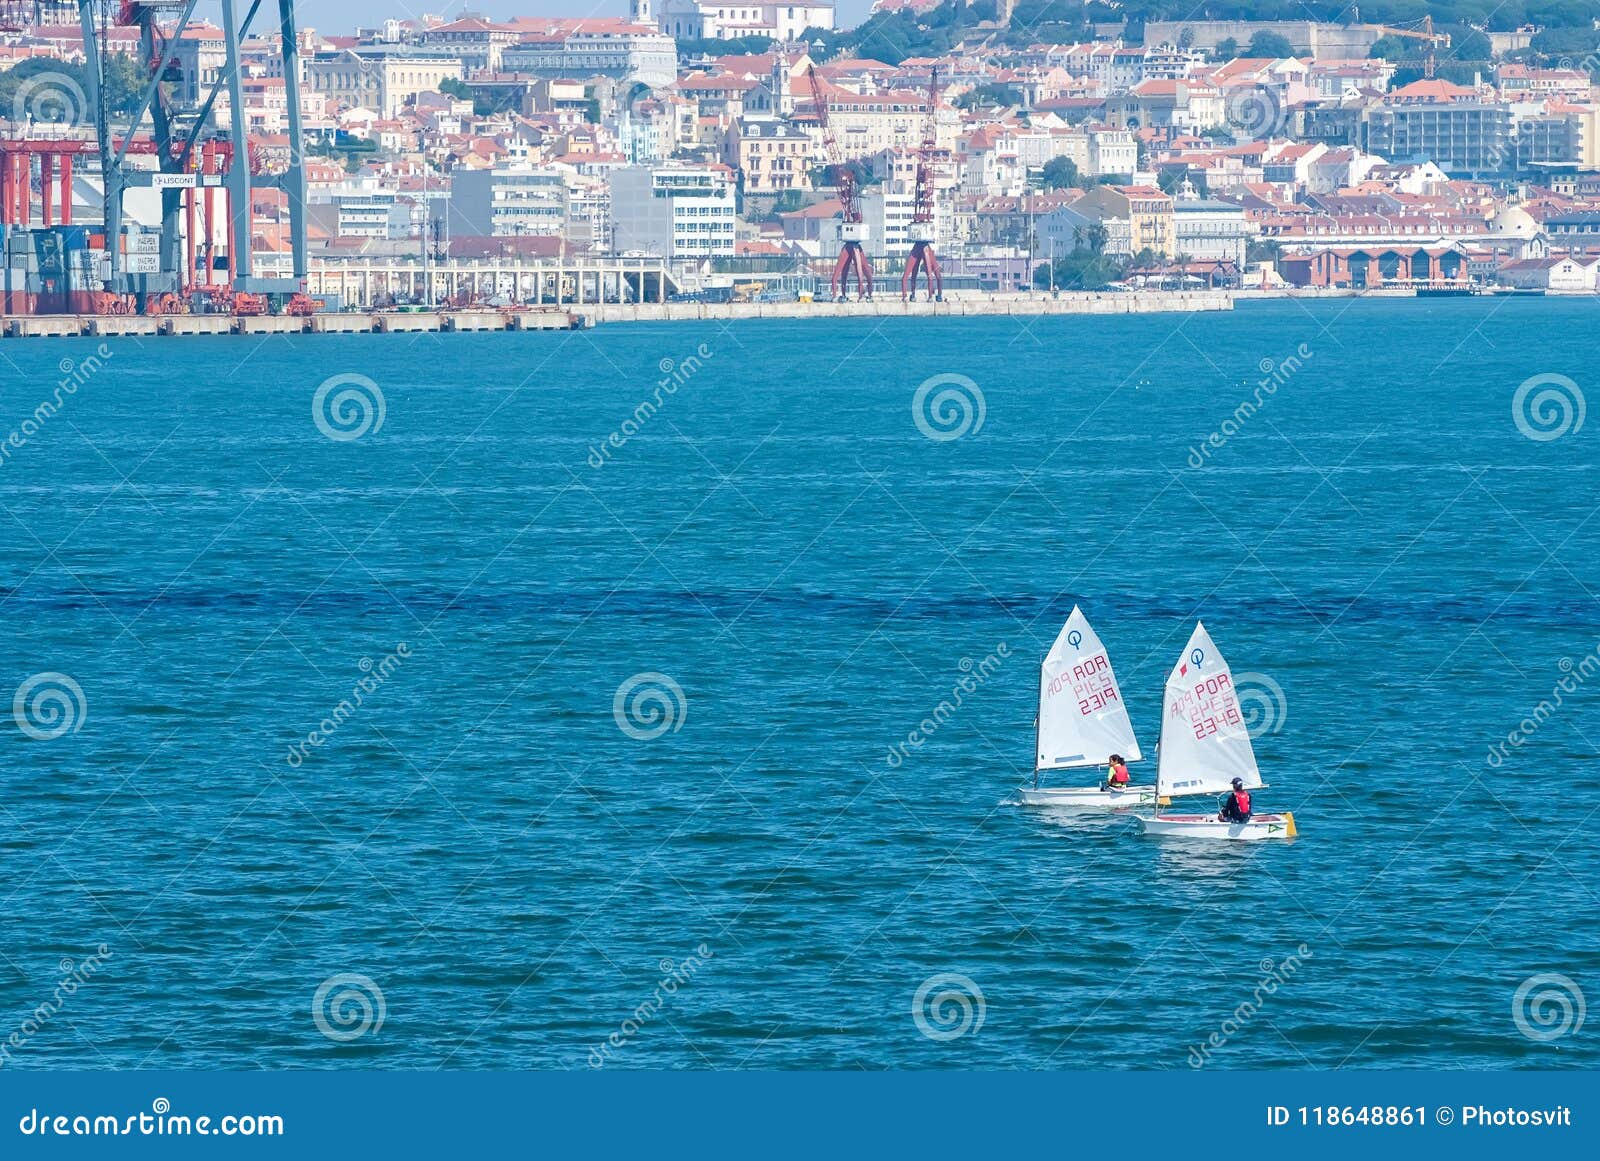 Lissabon Portugal - April 03, 2010: segelbåtar i det blåa havet på cityscape Yachtlopp på solig dag Havsseglingmästerskap Regatta- och yachtseglingsport Resa vid vatten med affärsföretag